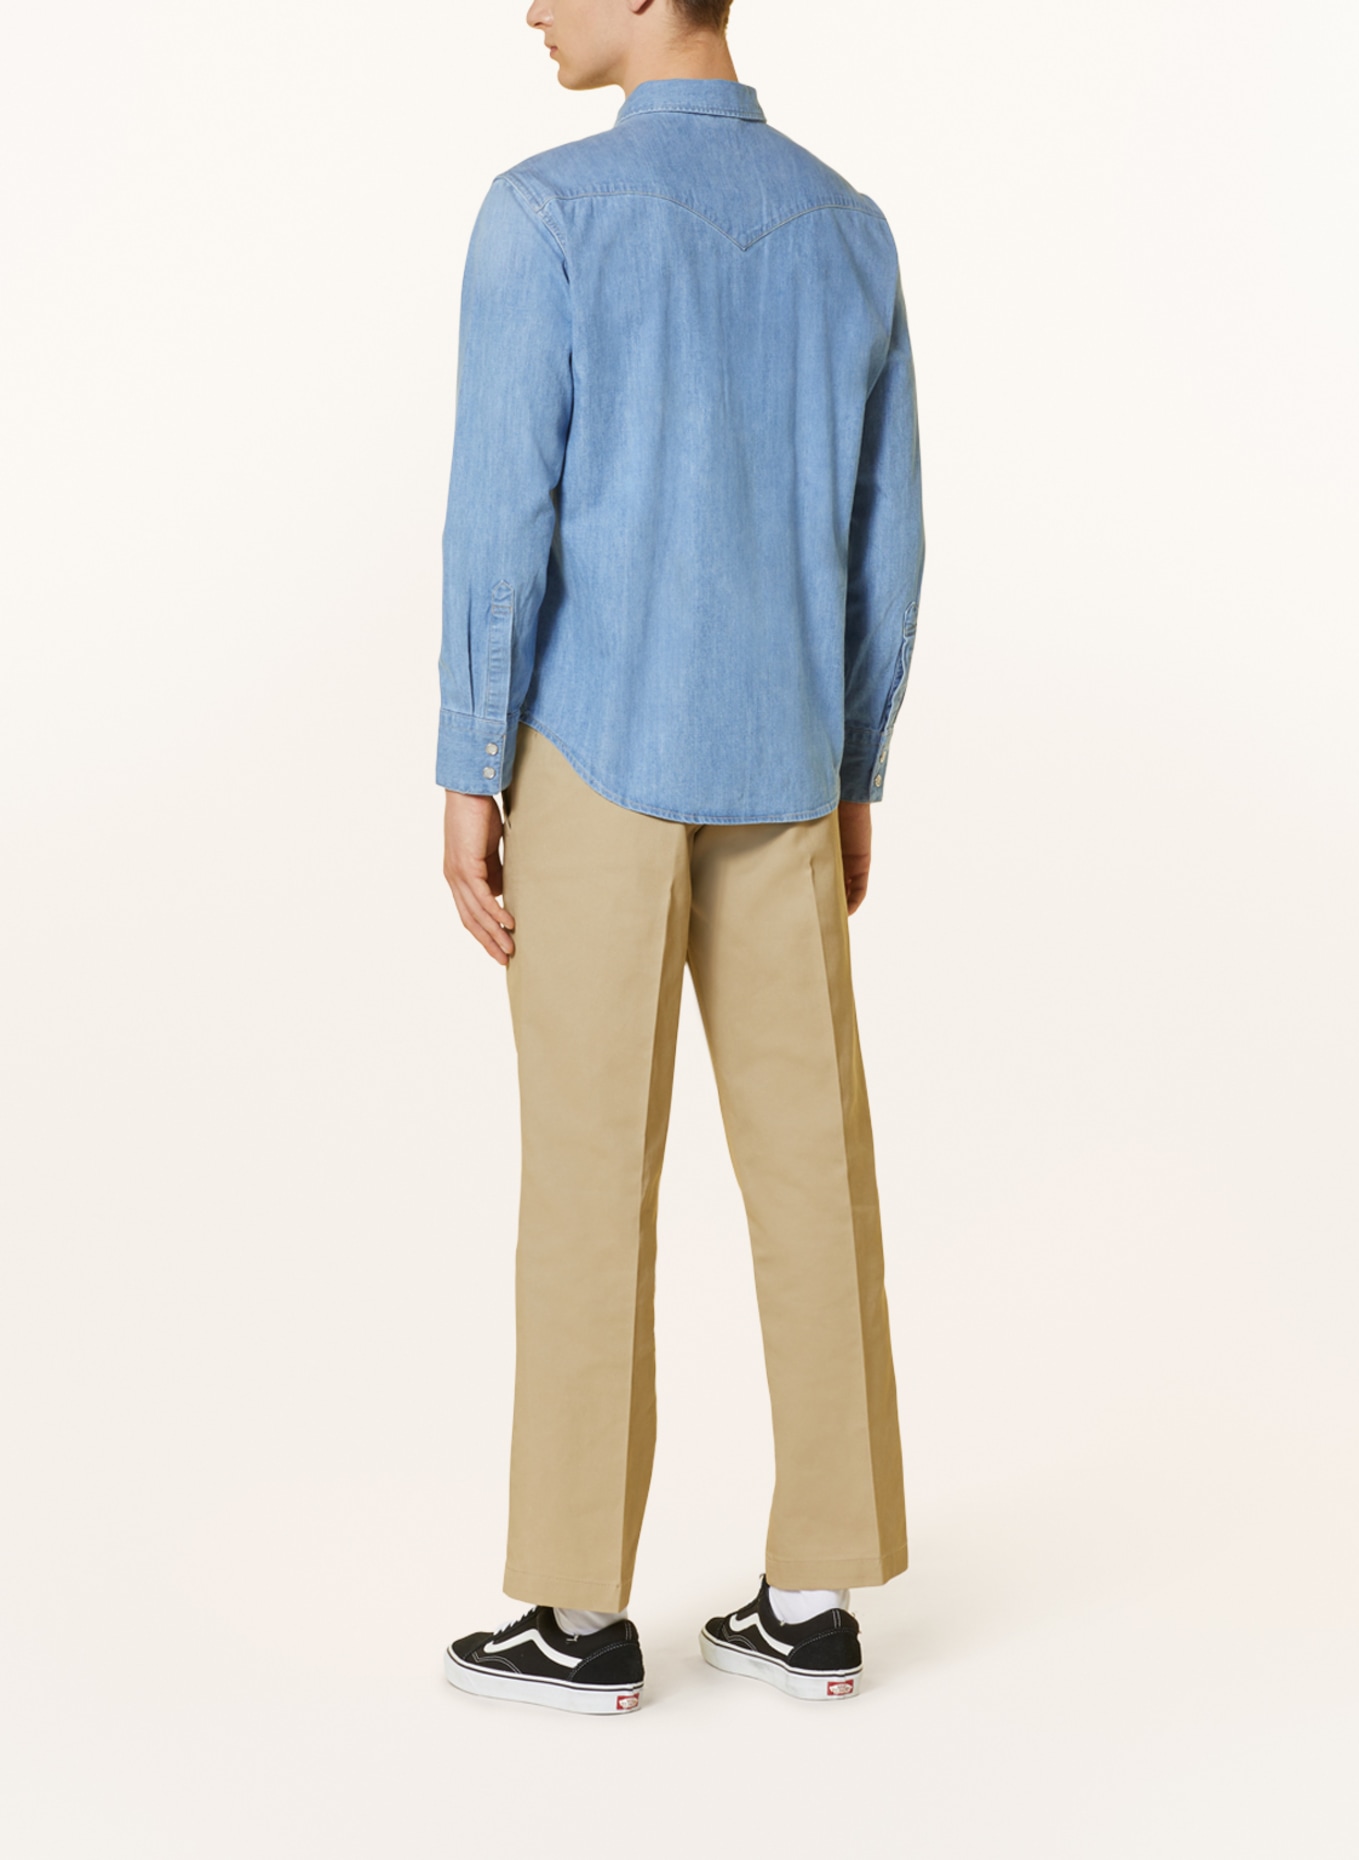 Levi's® Denim shirt standard fit, Color: 47 Light Indigo - Worn In (Image 3)